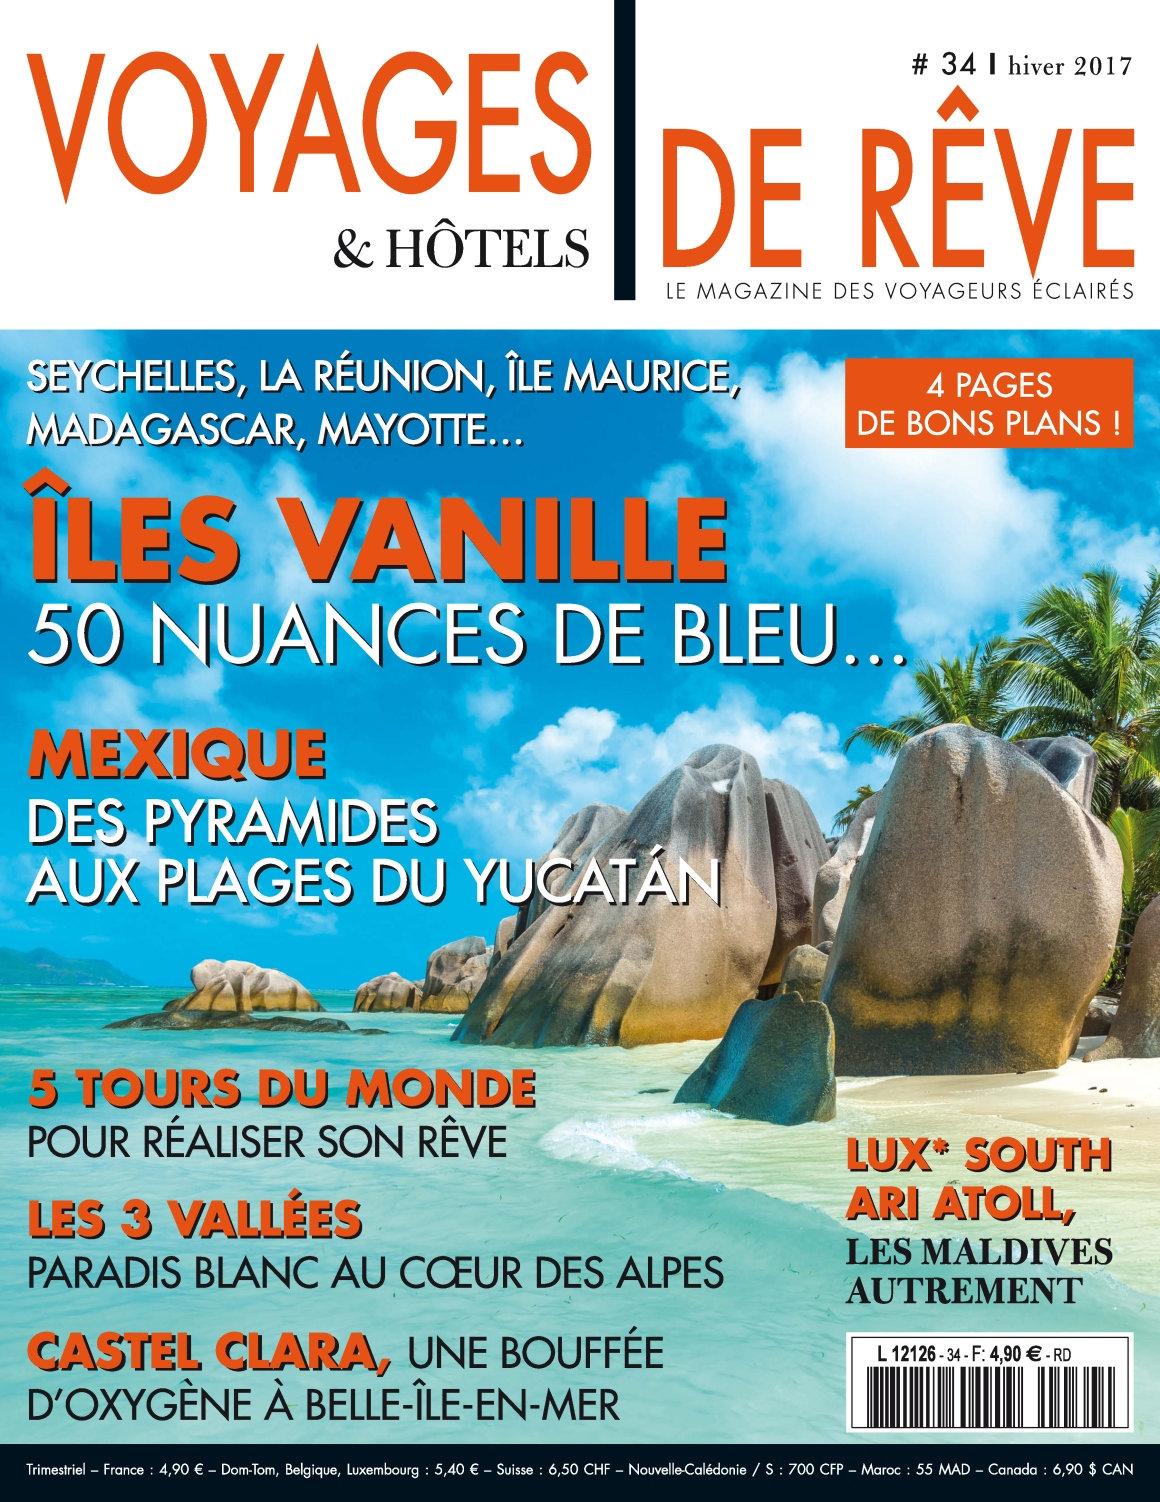 Voyages & Hôtels de rêve N°34 - Hiver 2017 